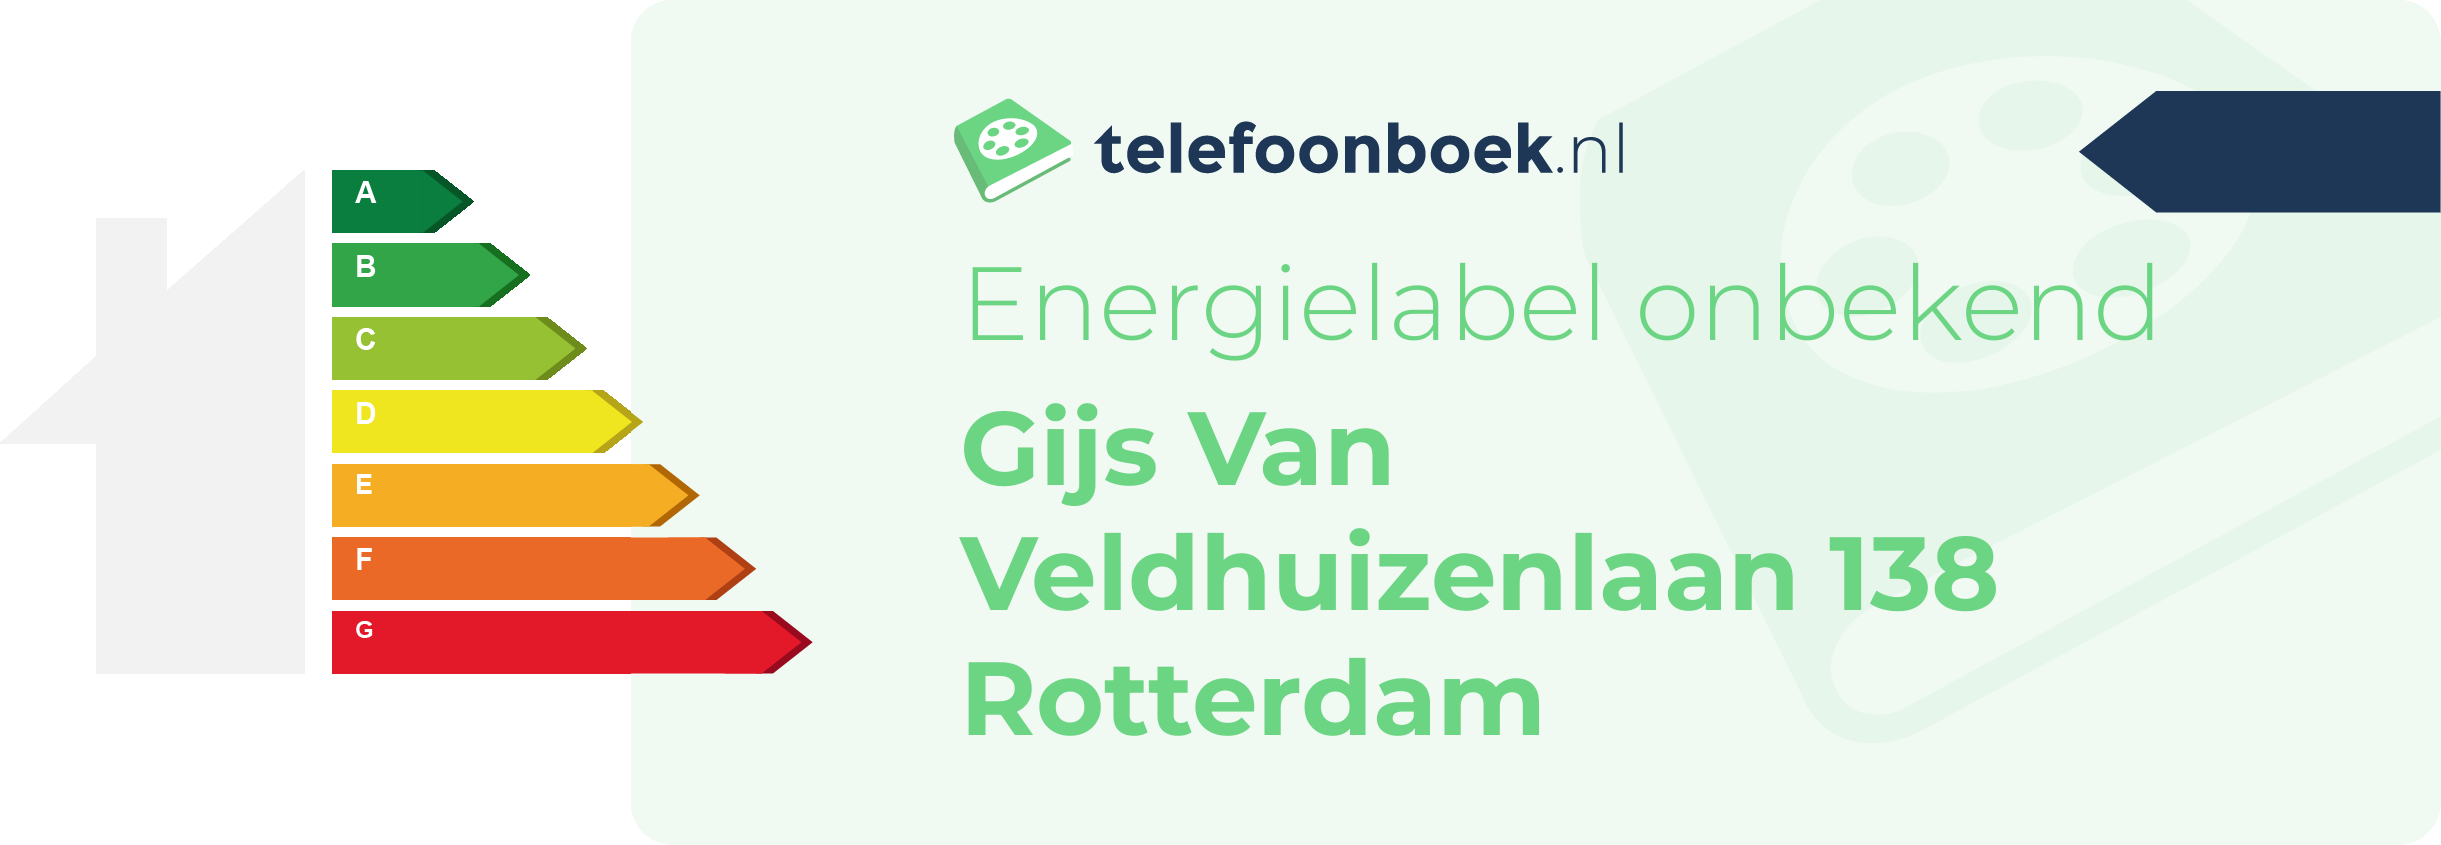 Energielabel Gijs Van Veldhuizenlaan 138 Rotterdam